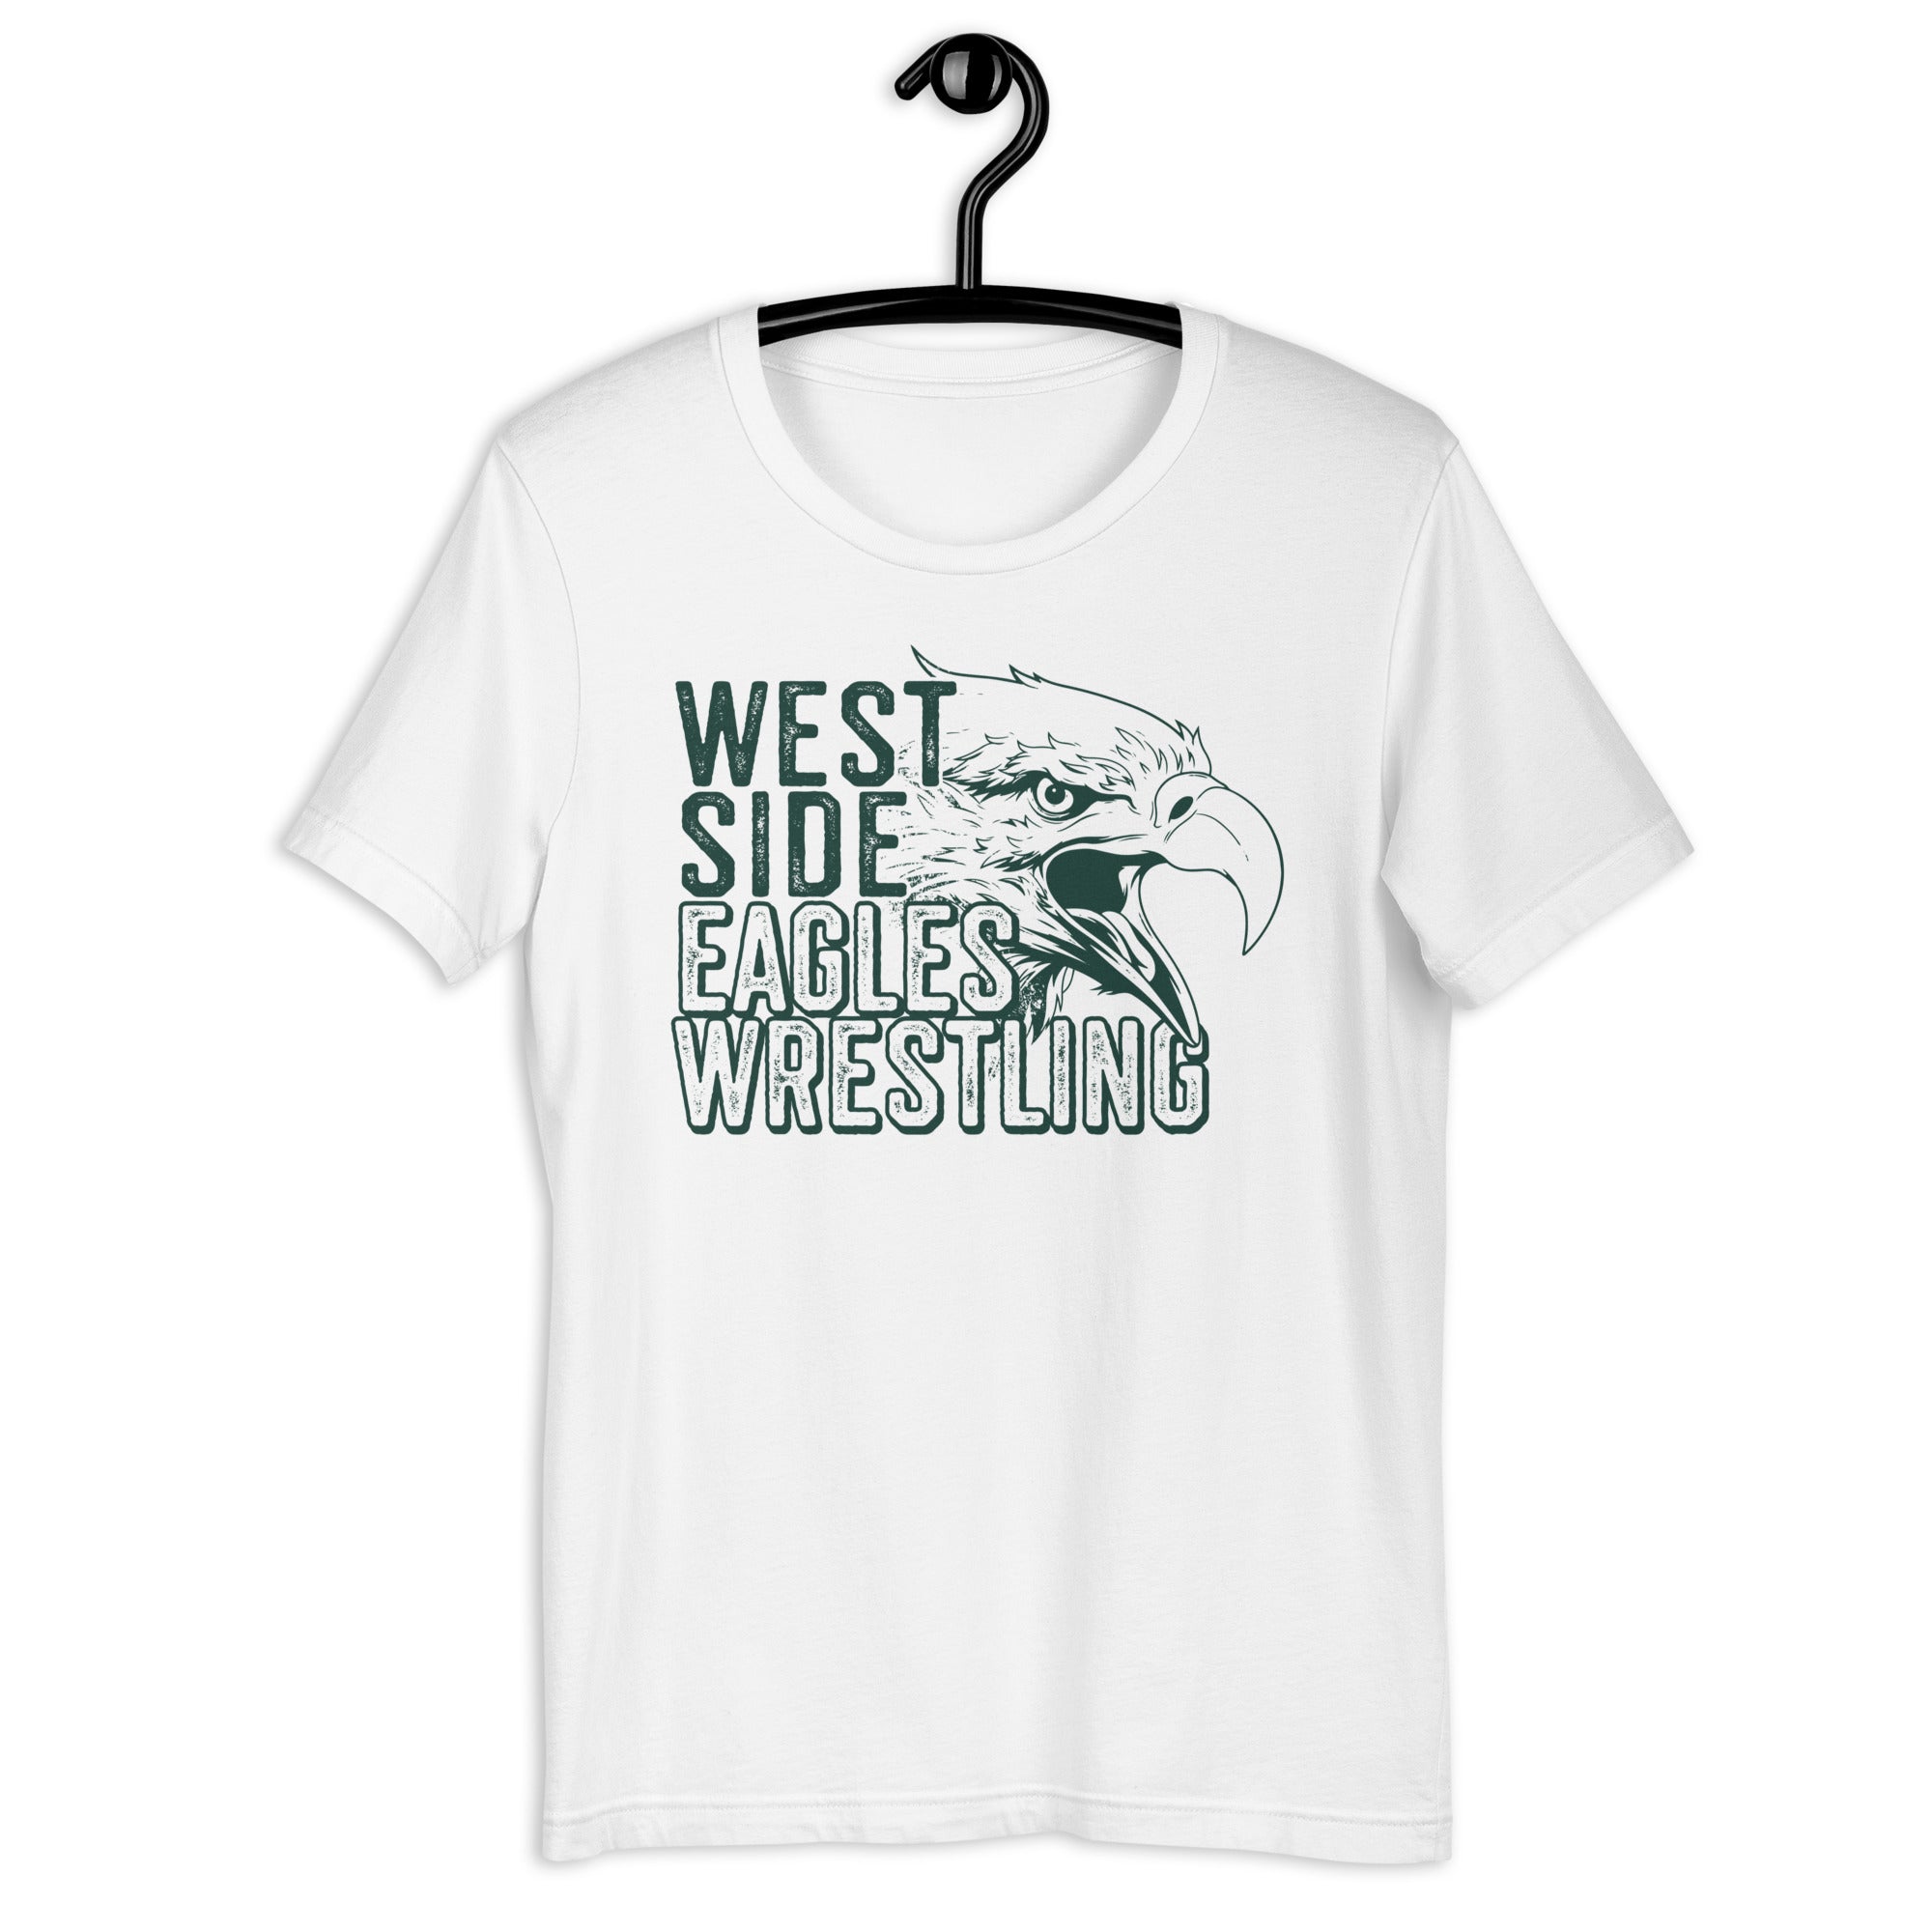 West Side Eagles Wrestling Unisex t-shirt